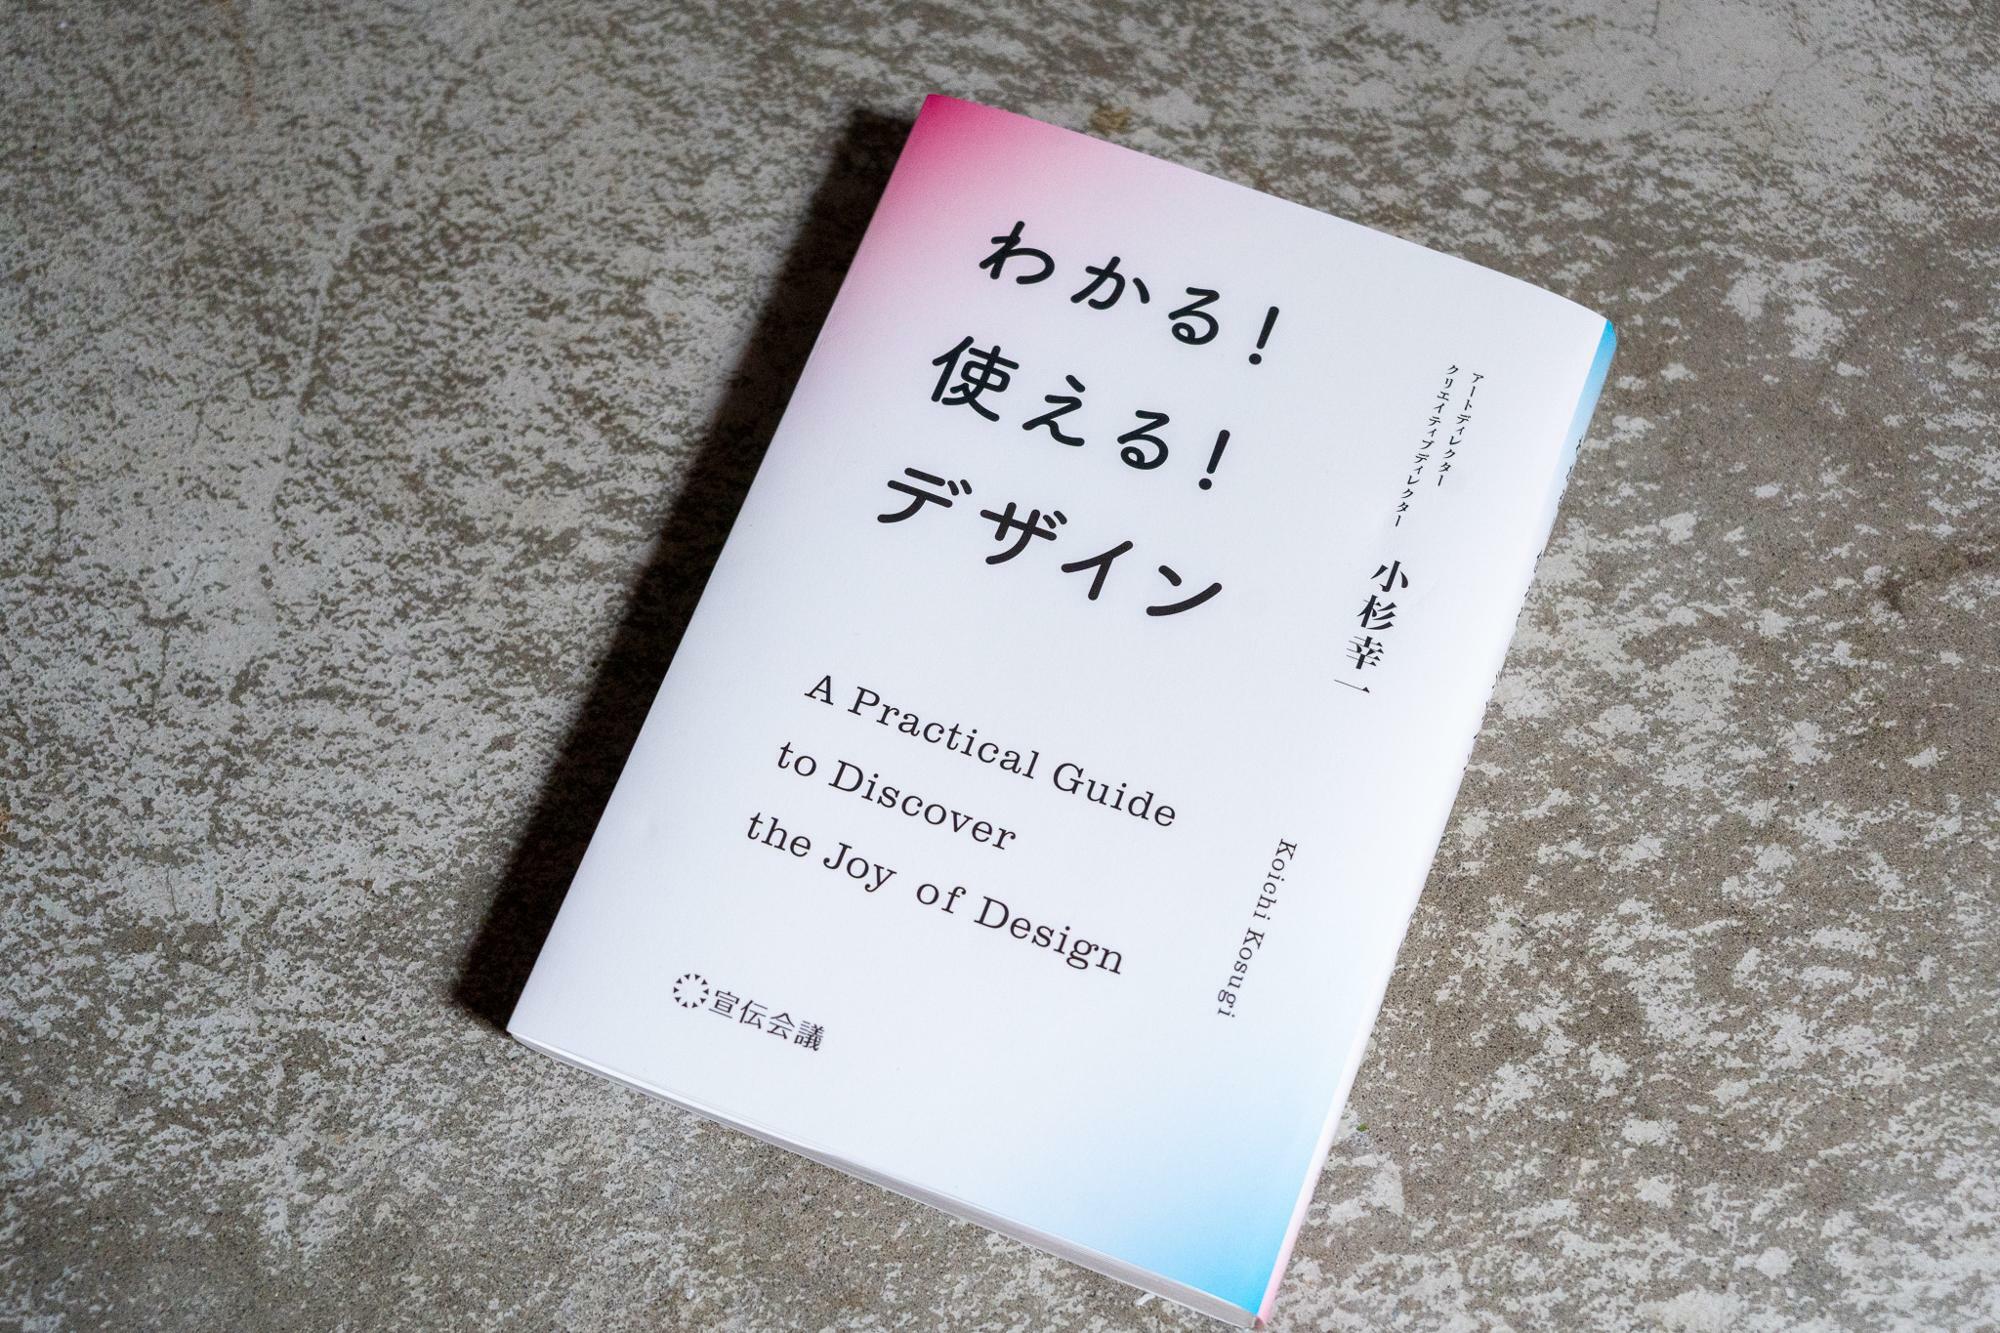 今年3月に発売された小杉さんの著書『わかる！ 使える！ デザイン』（宣伝会議）は発売前から重版になった